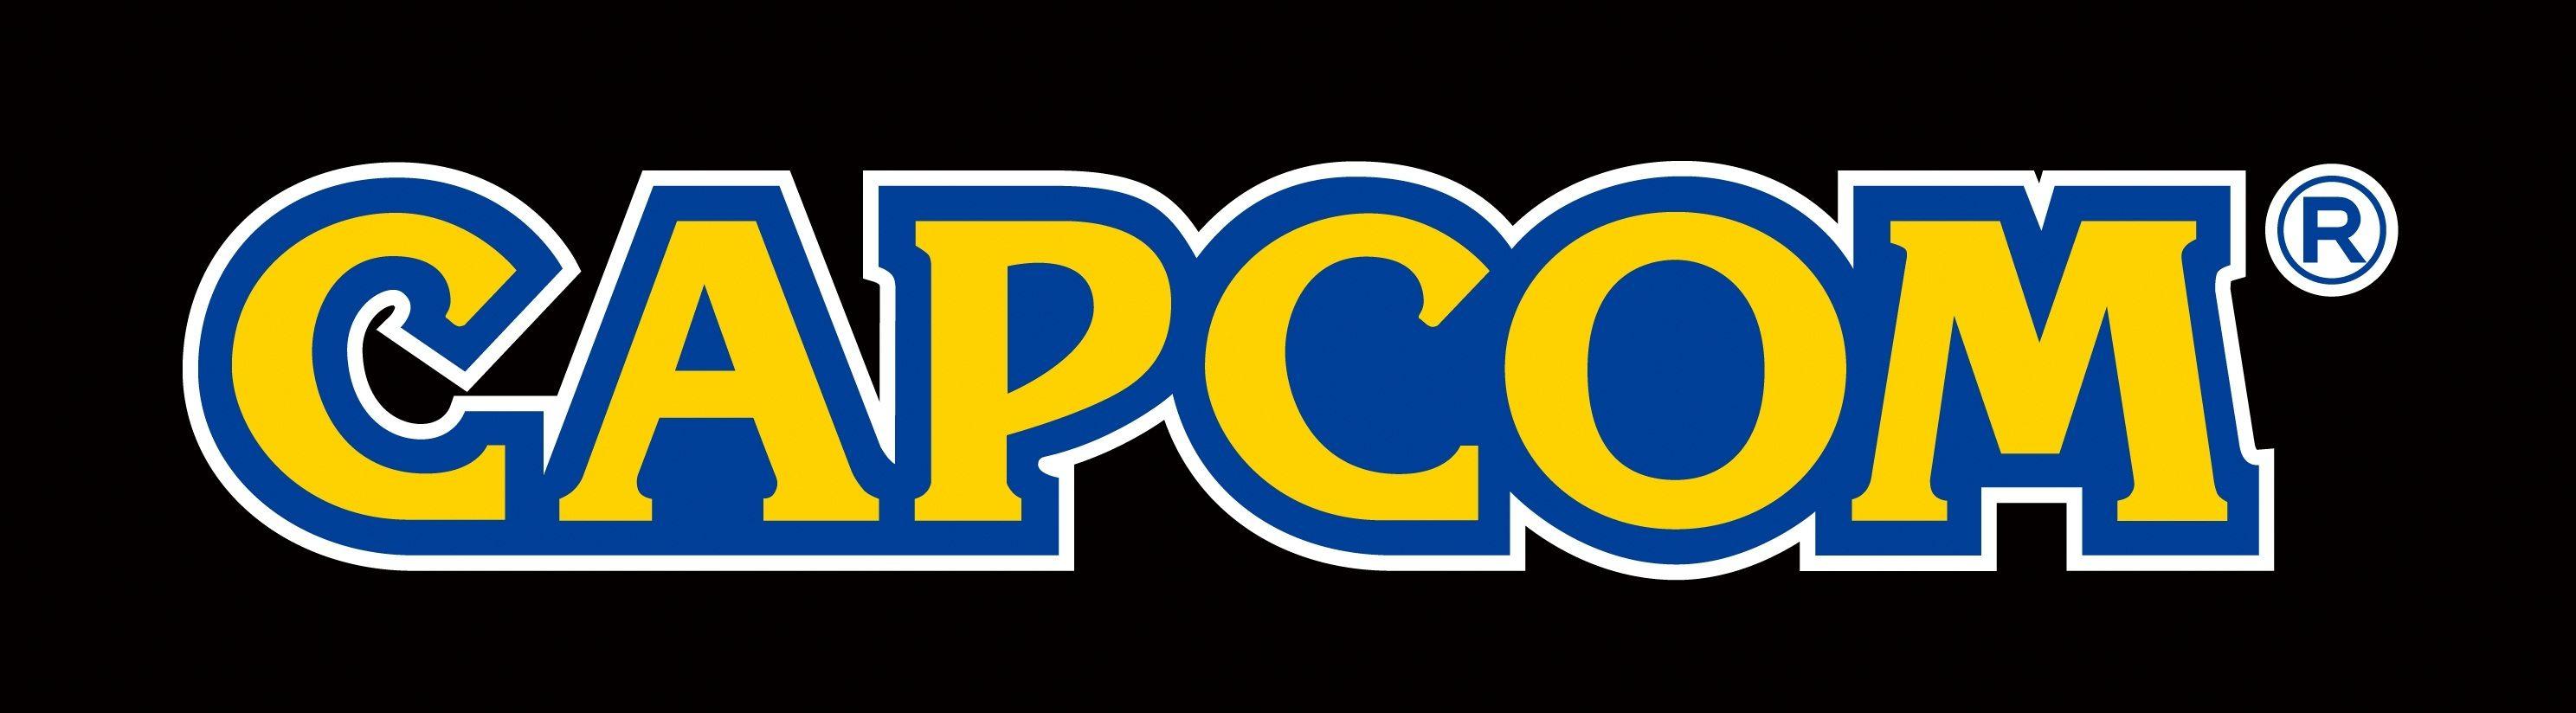 Capcom Logo - Capcom Logo Wallpapers HD - Wallpaper Cave